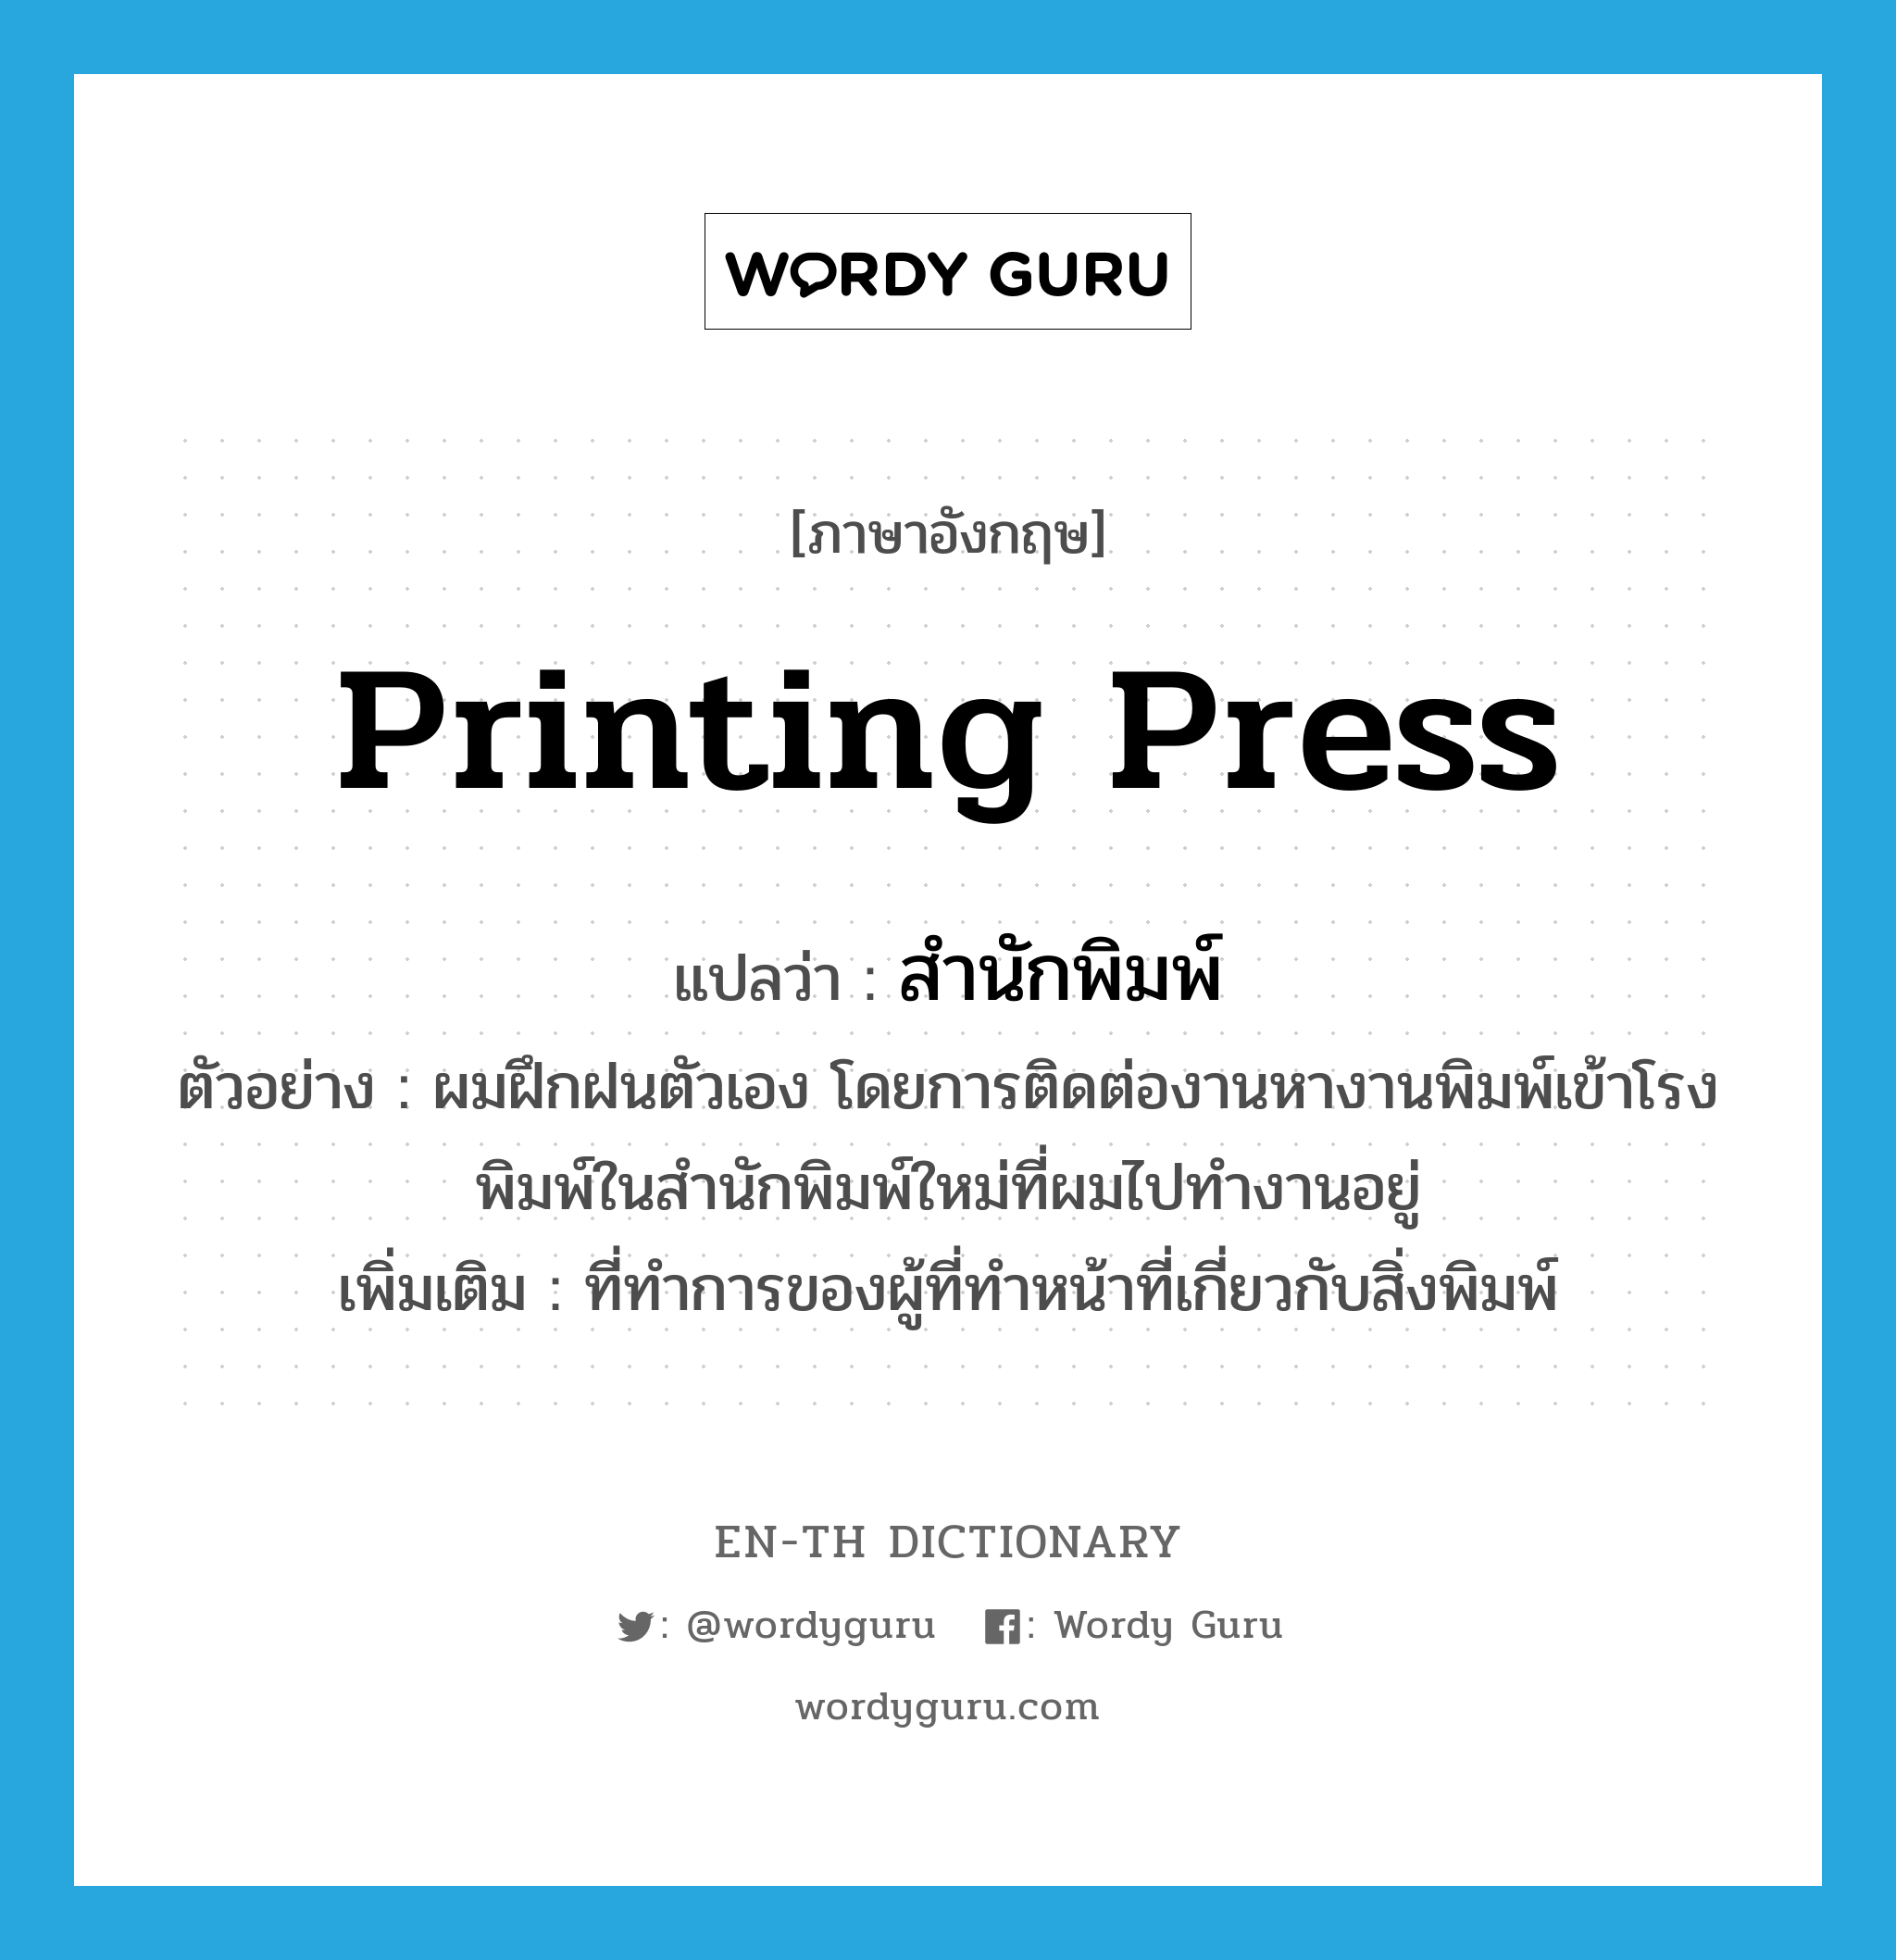 printing press แปลว่า?, คำศัพท์ภาษาอังกฤษ printing press แปลว่า สำนักพิมพ์ ประเภท N ตัวอย่าง ผมฝึกฝนตัวเอง โดยการติดต่องานหางานพิมพ์เข้าโรงพิมพ์ในสำนักพิมพ์ใหม่ที่ผมไปทำงานอยู่ เพิ่มเติม ที่ทำการของผู้ที่ทำหน้าที่เกี่ยวกับสิ่งพิมพ์ หมวด N